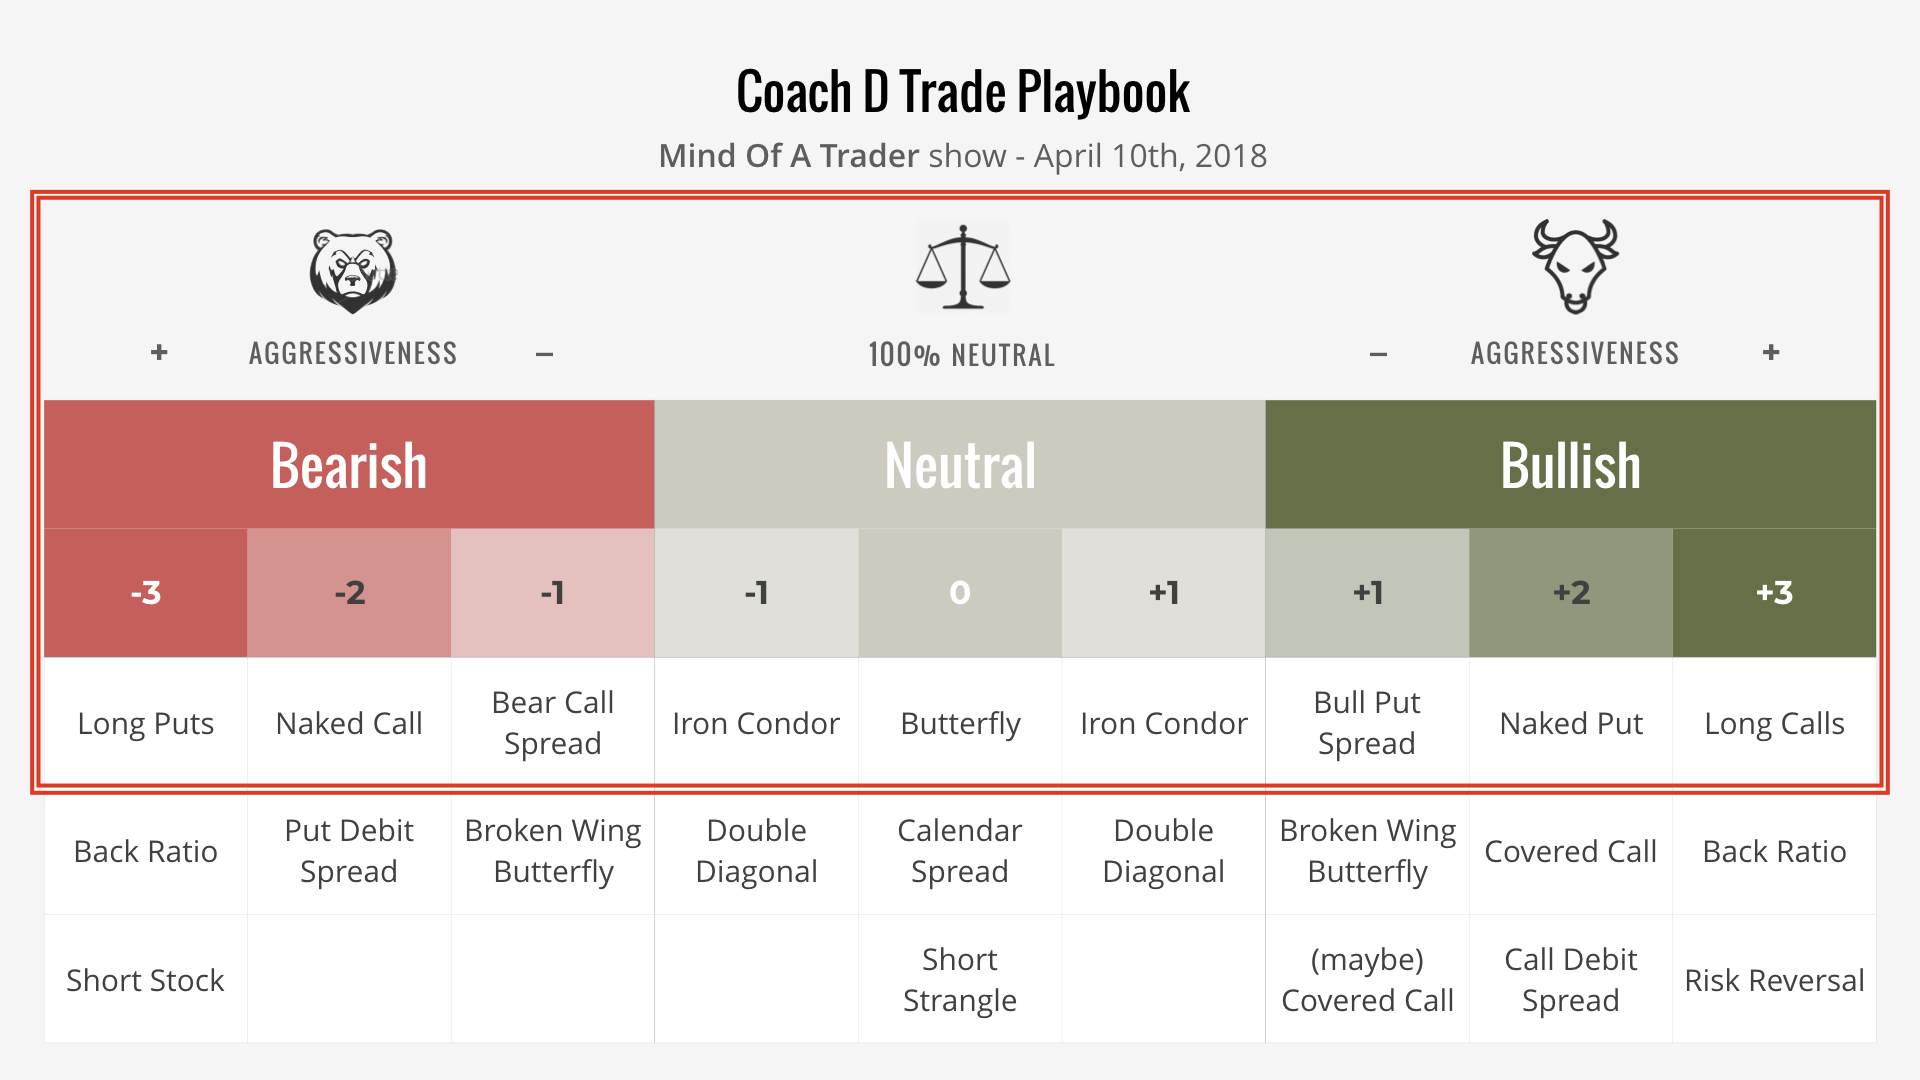 Coach Noah Davidson' Trade Playbook